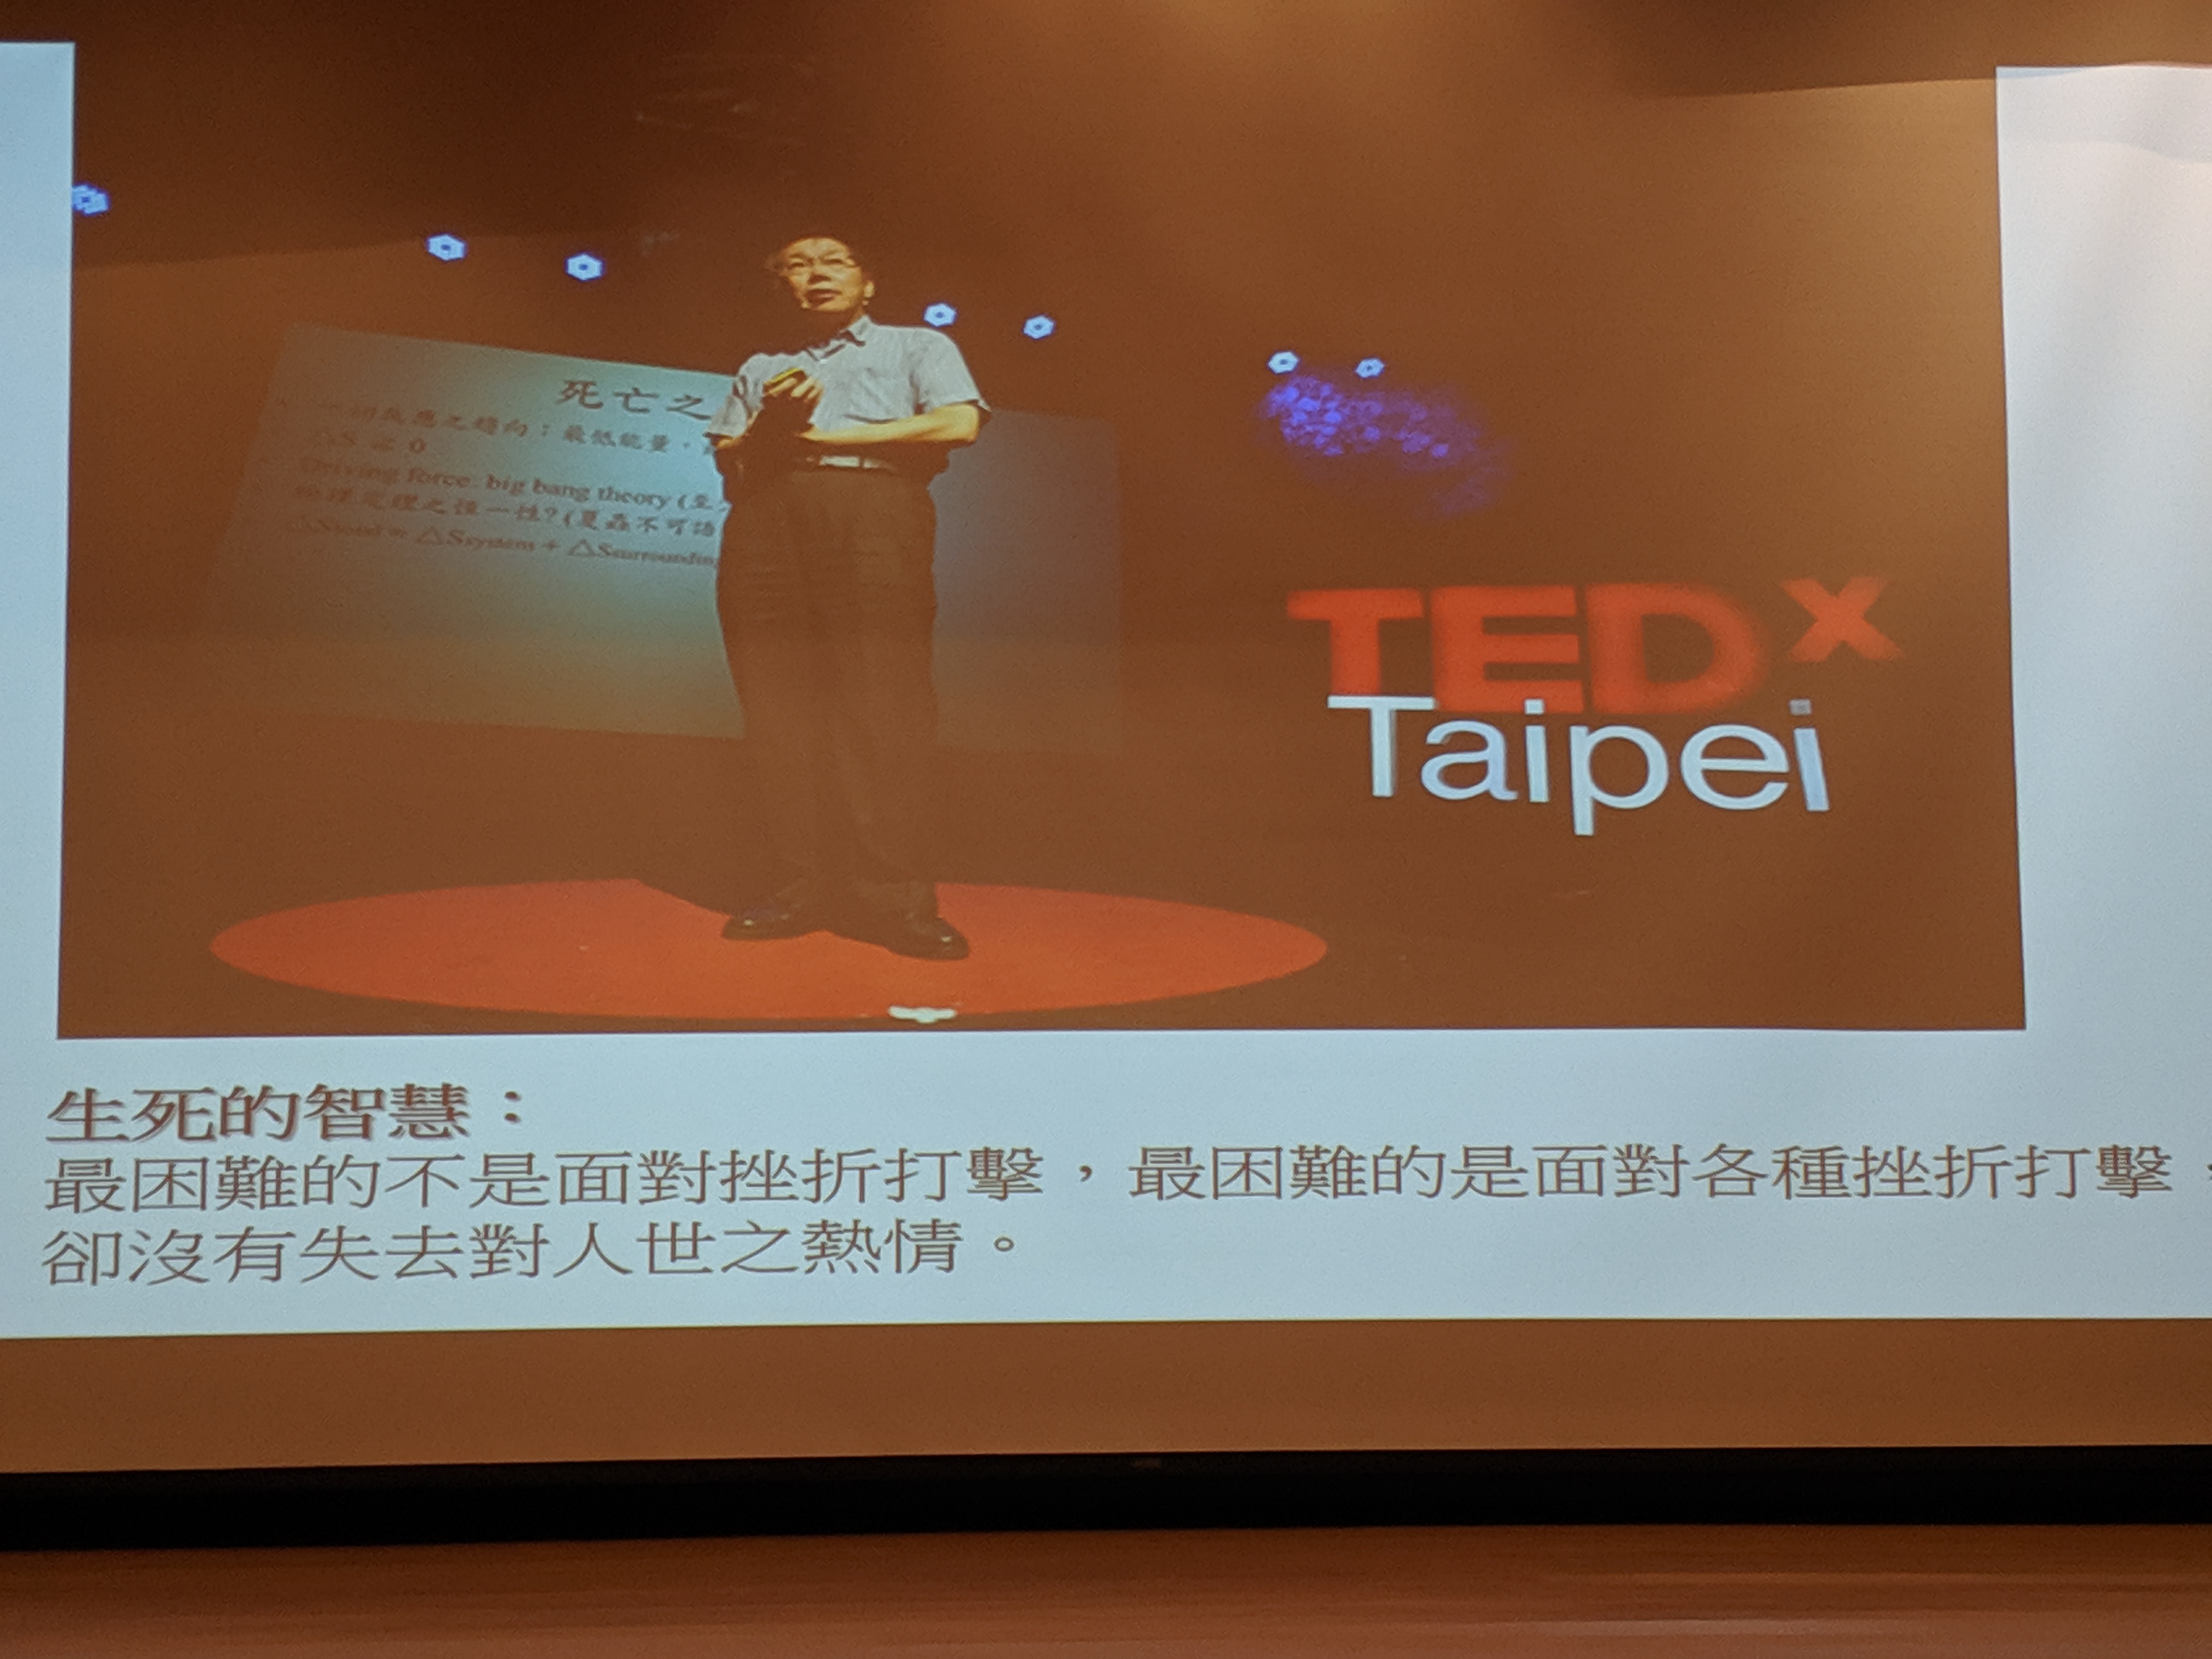 TedxTaipei